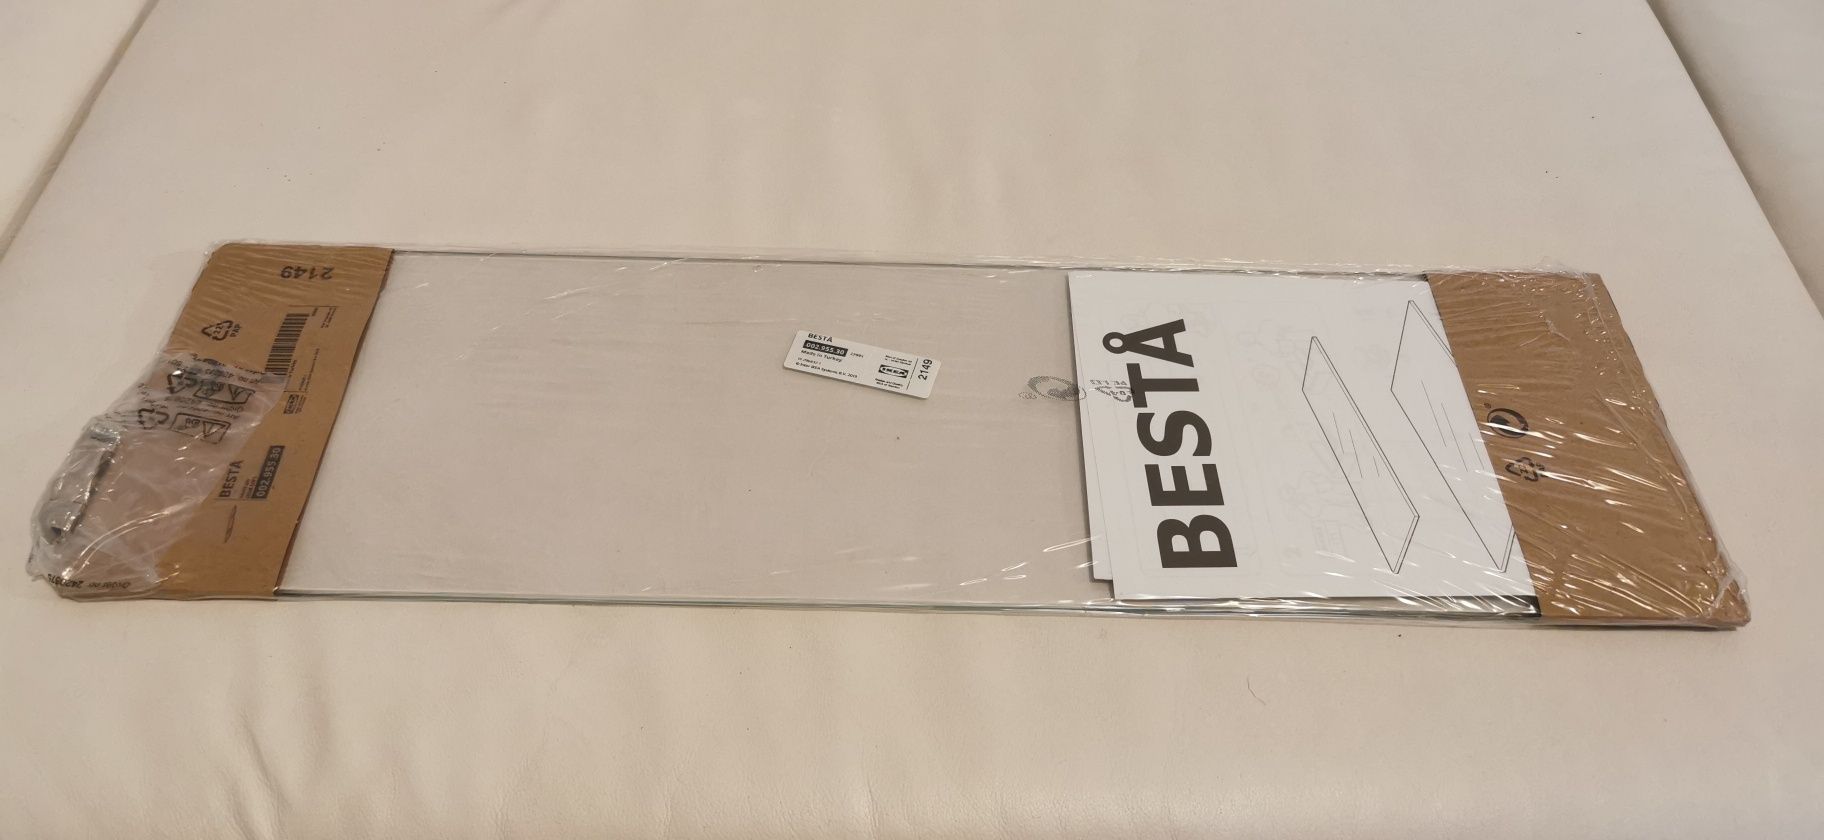 IKEA Besta półka szklana, 56x16 cm, 2 sztuki, nowe, oryginalnie zapako